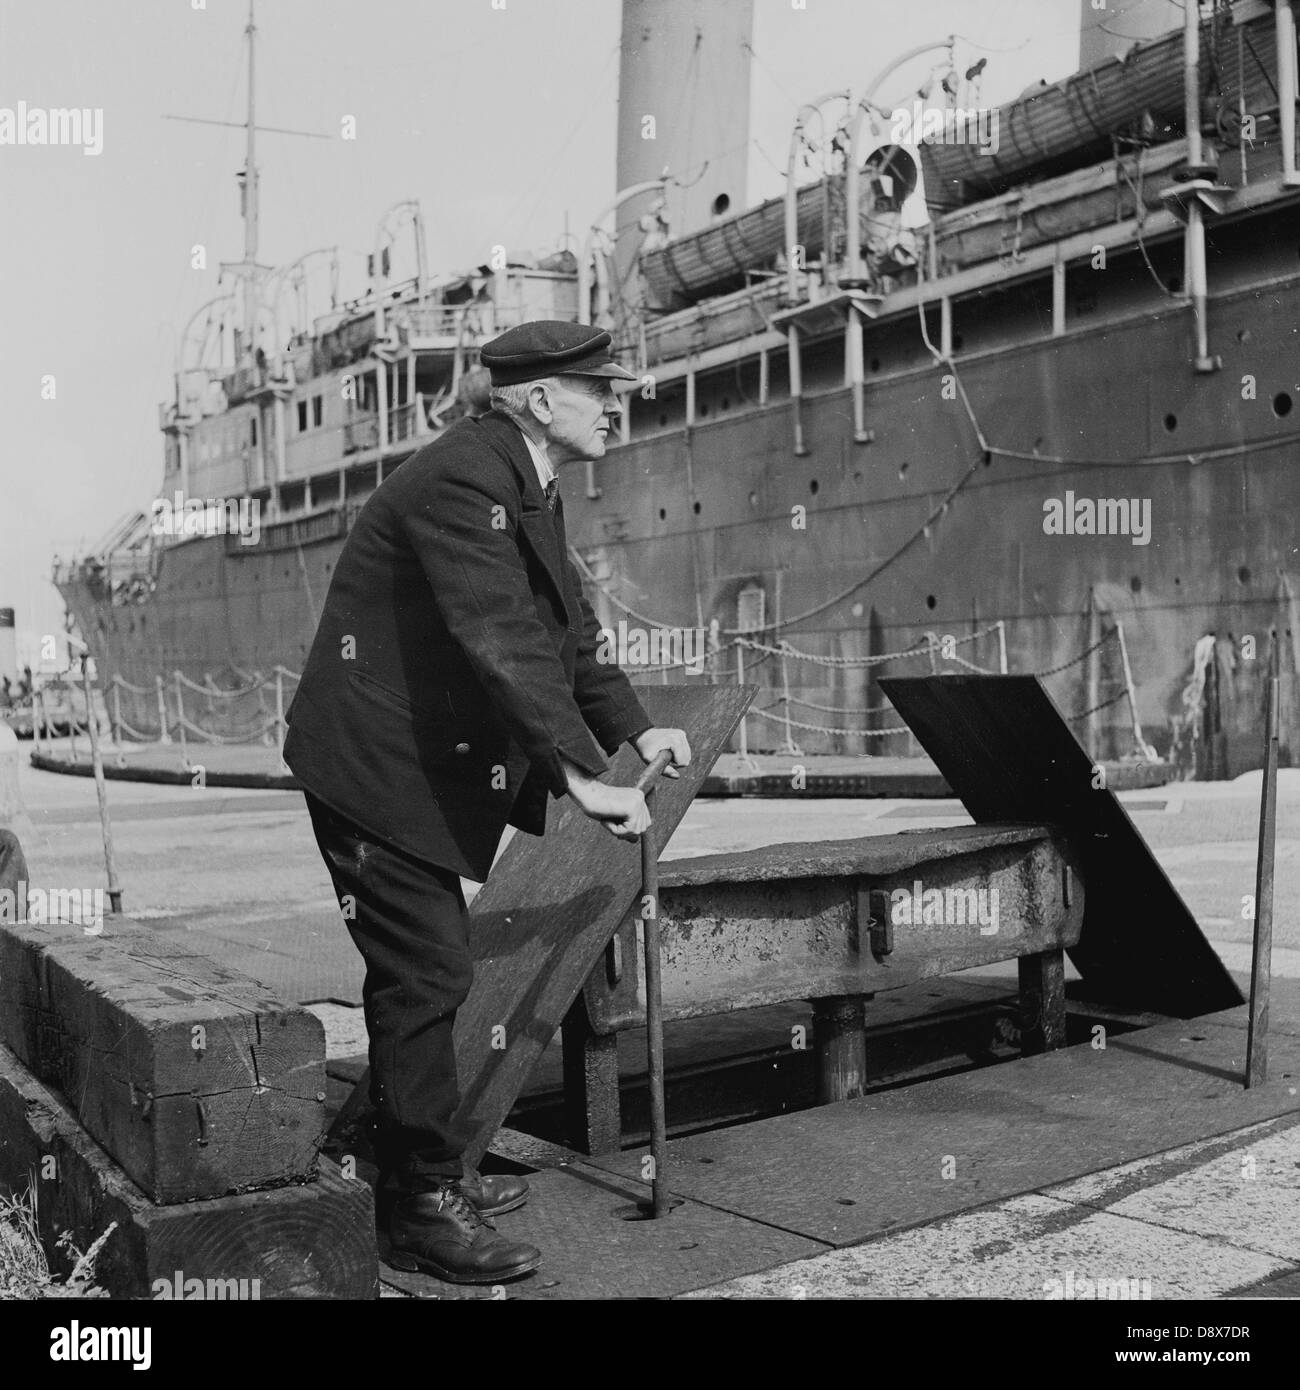 Historische der 1950er Jahre. Ein Versand-Operative oder Hafenarbeiter nutzt eine Winde um sicherzustellen, dass der Anker eines Schiffes richtig festgemacht ist. Stockfoto